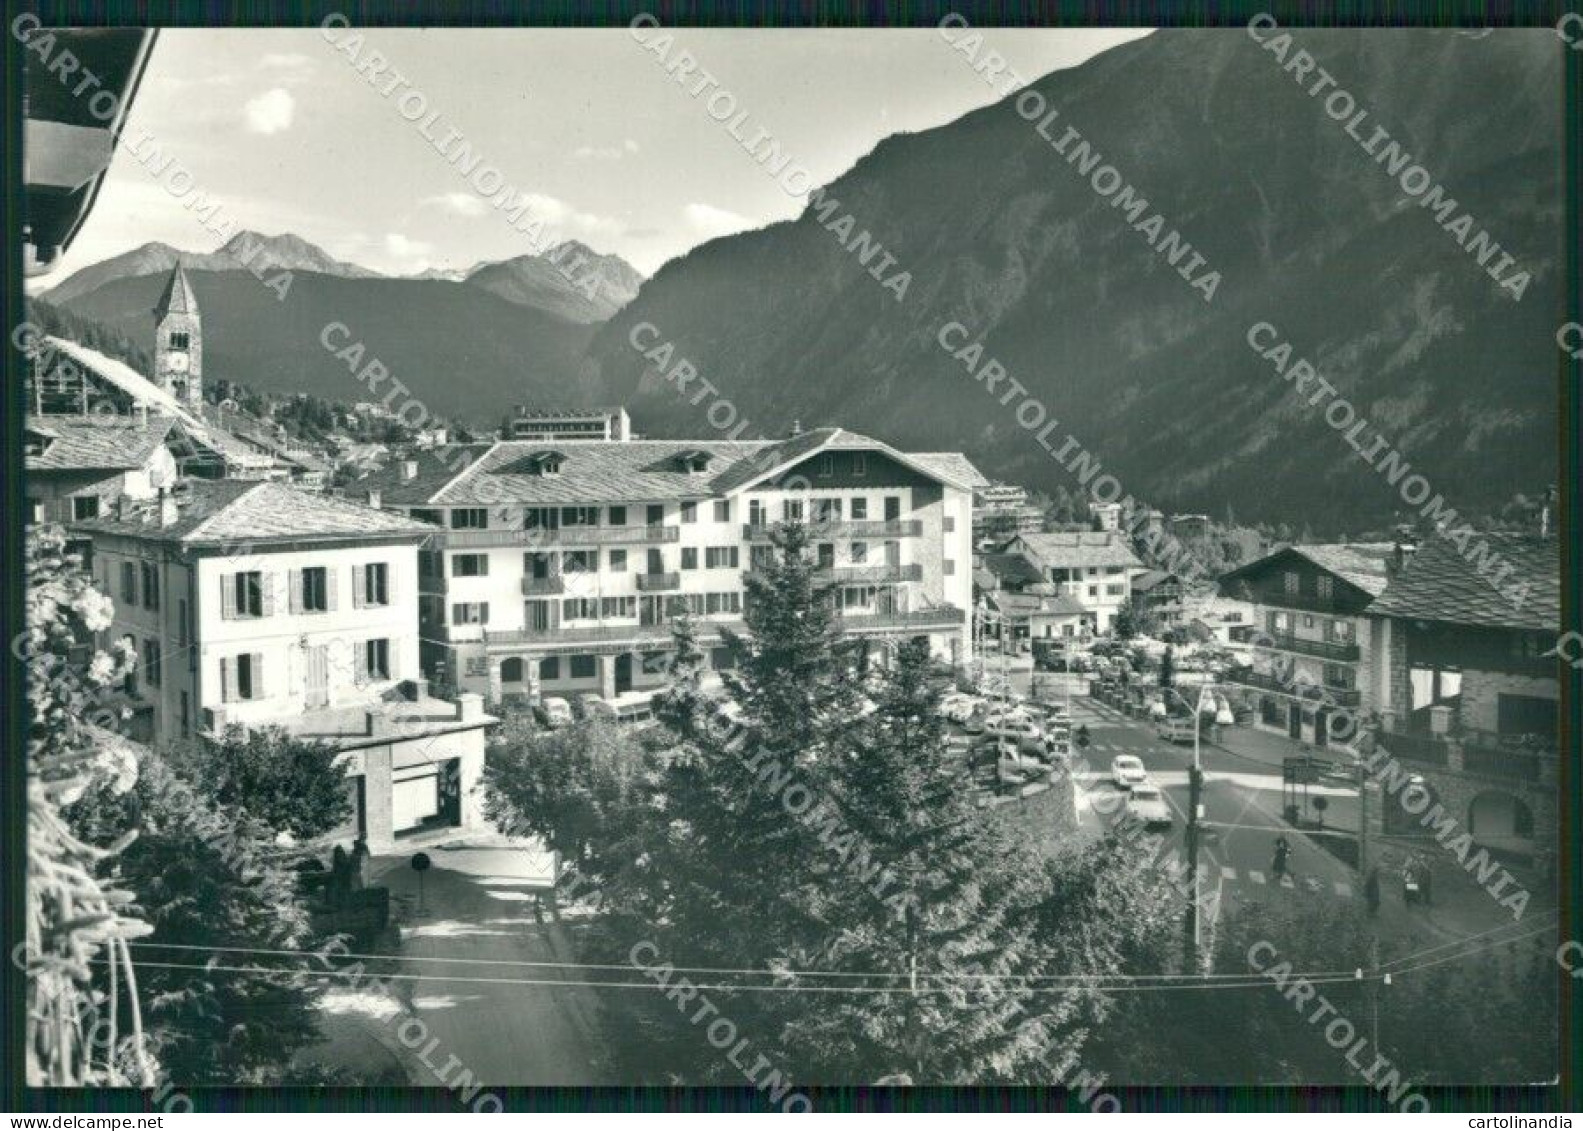 Aosta Courmayeur Foto FG Cartolina ZK4330 - Aosta